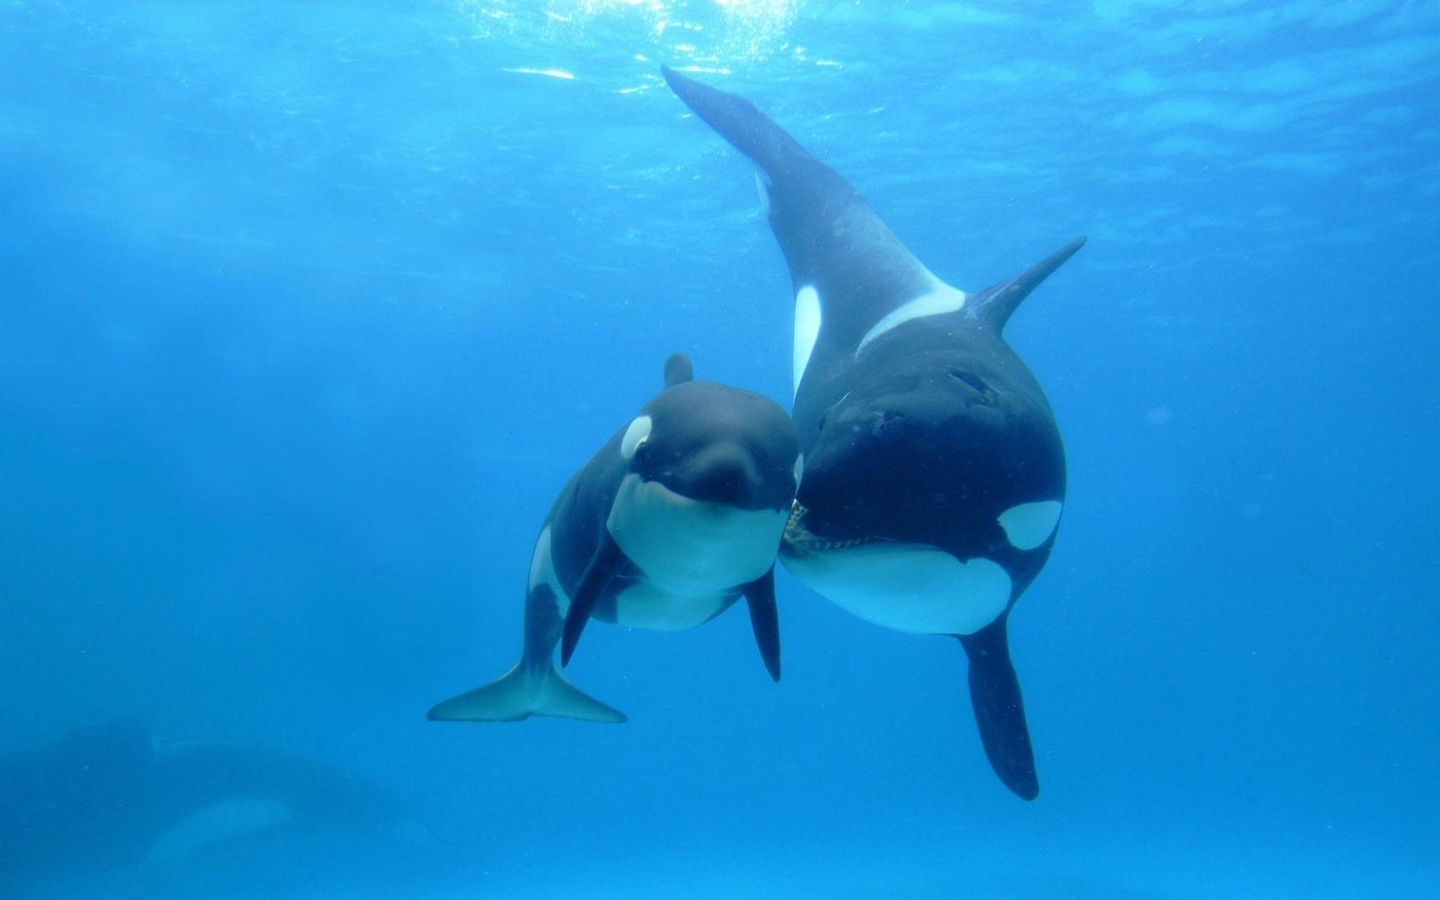 Image: Orca, mother, cub, sea, depth